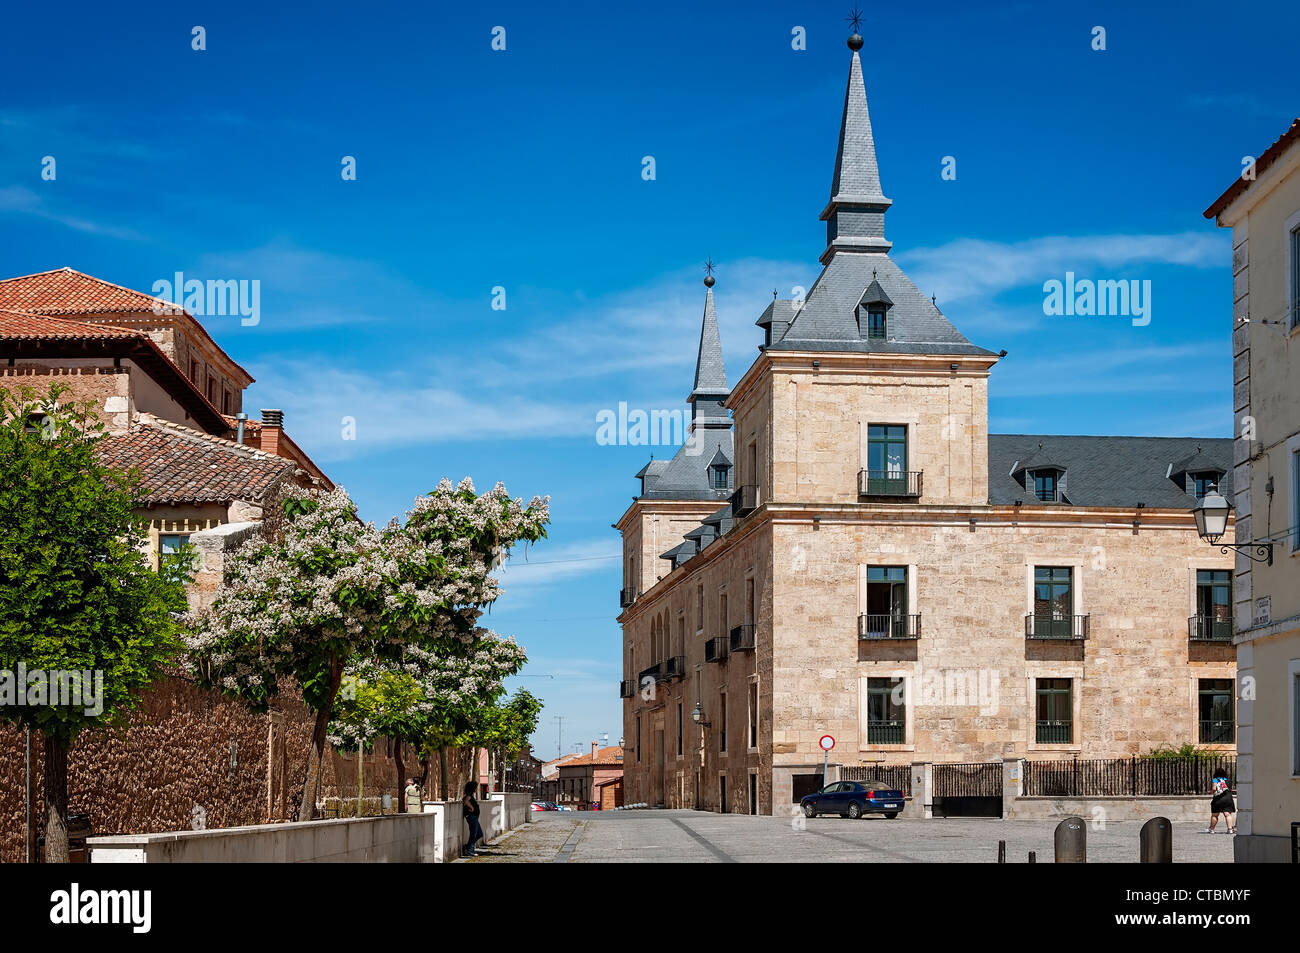 Parador National dans la place principale de la ville de Lerma, province de Burgos, Castille et Leon, Espagne, Europe Banque D'Images